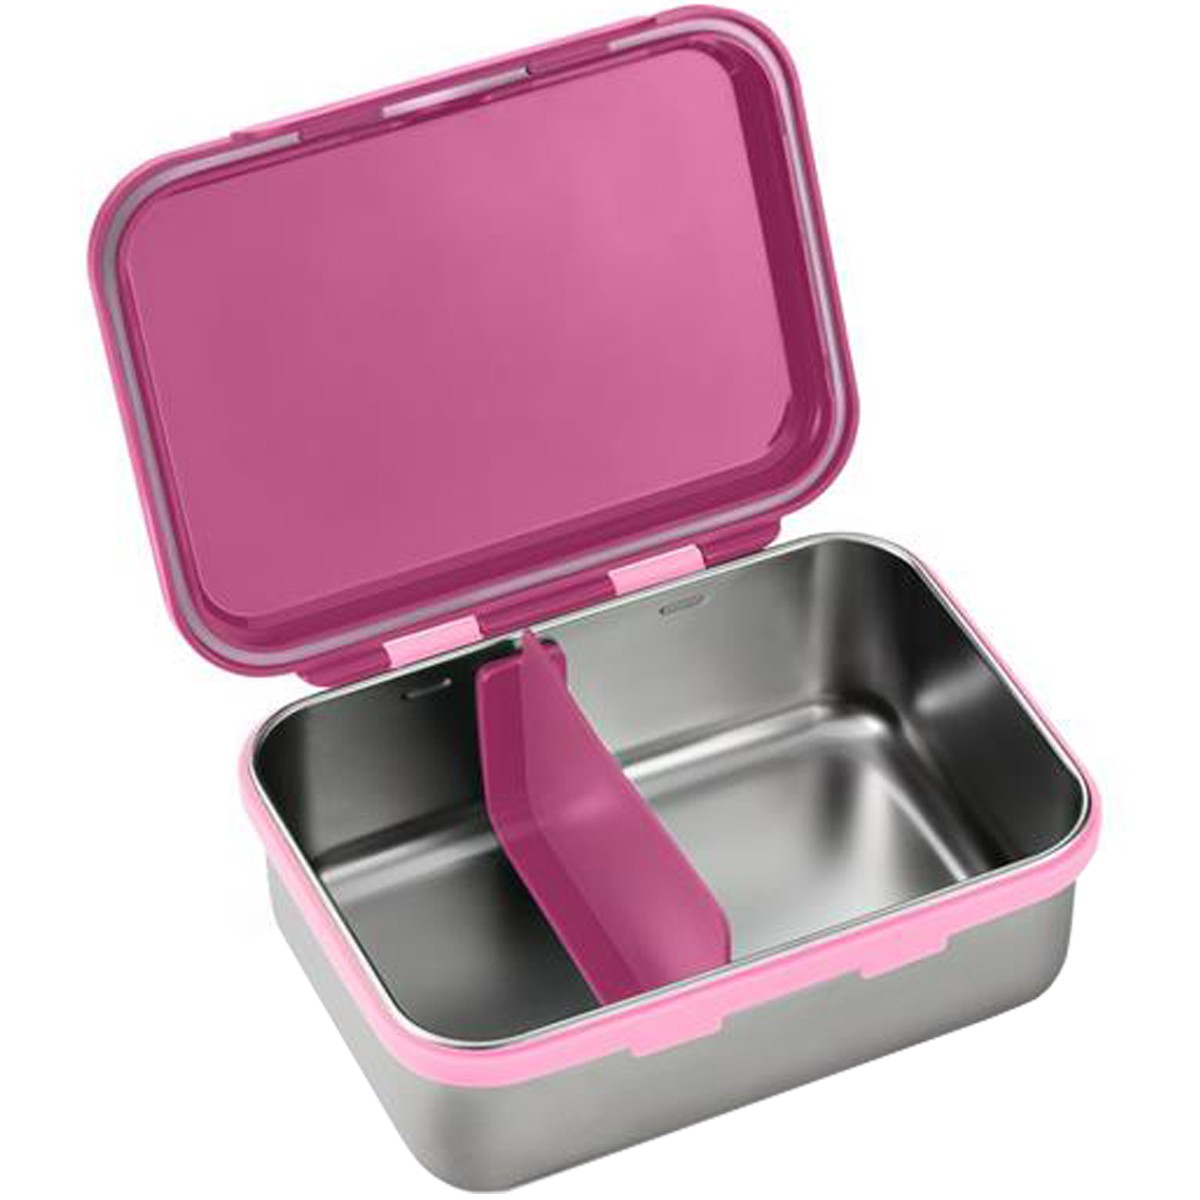 Porta Lanches Infantil Bento Box Rosa Chock em Aço Inox Hot e Cold Para 6+ Meses - Fisher Price